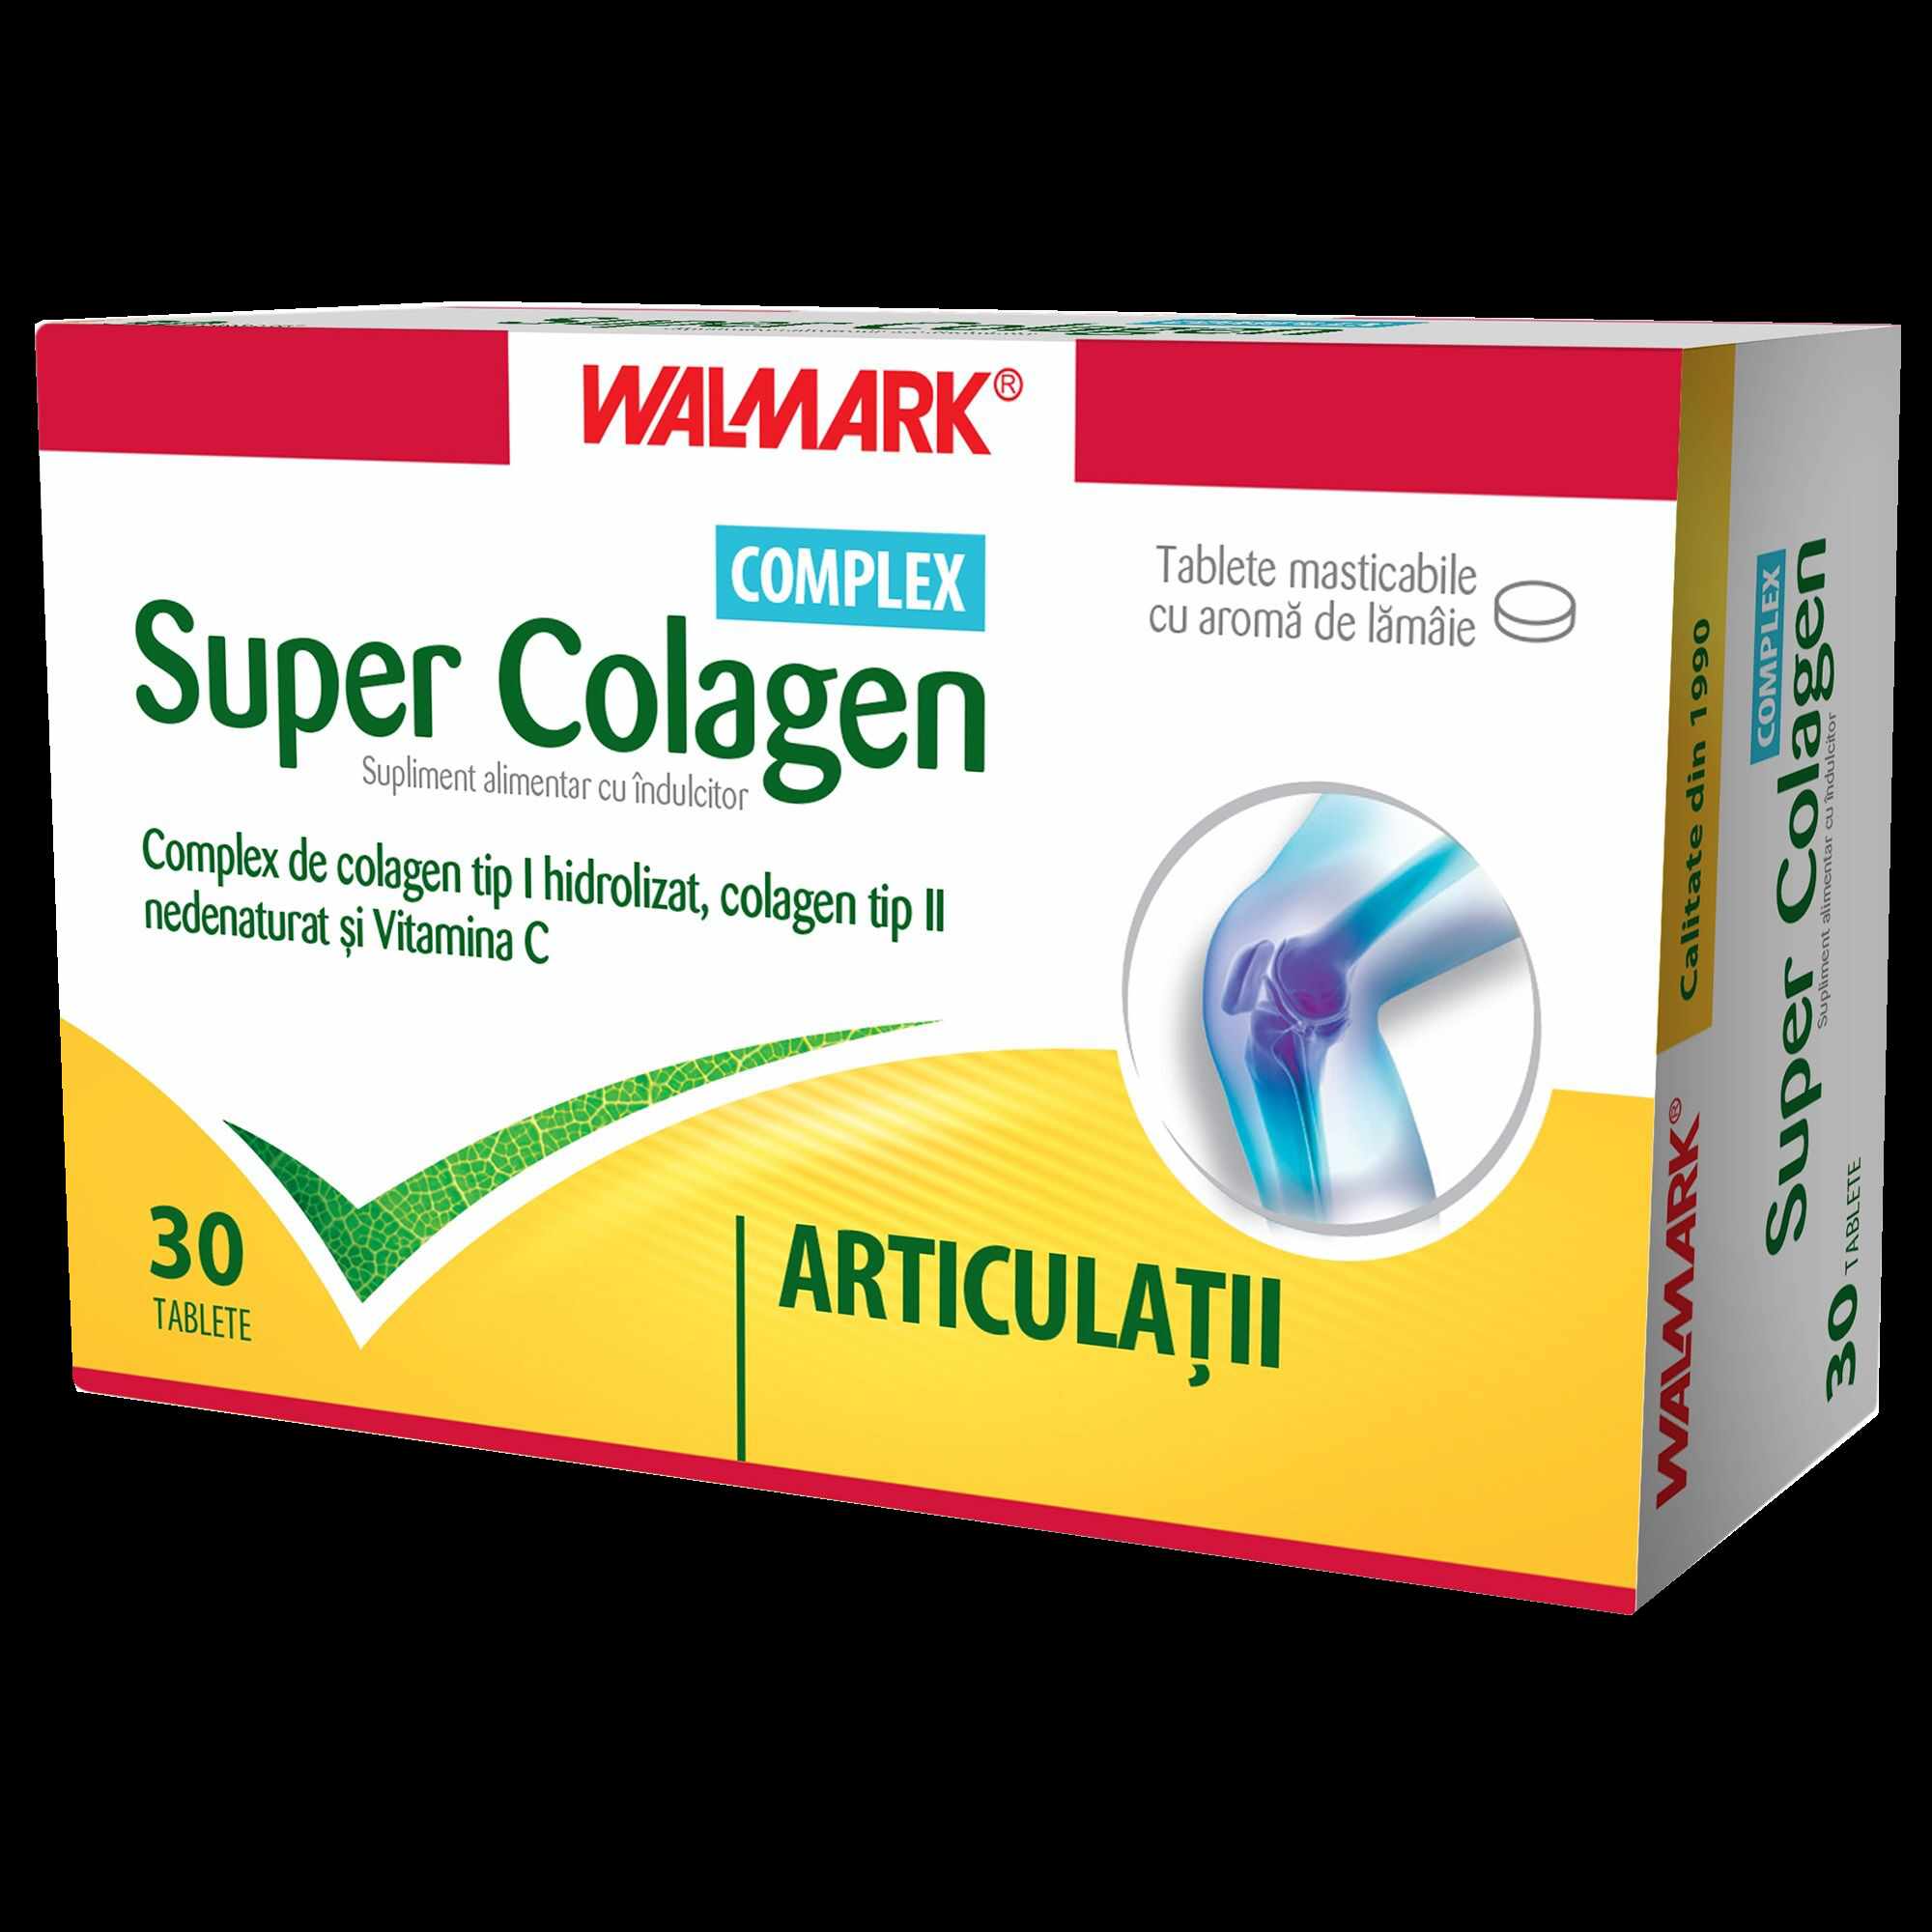 Walmark Super Colagen Complex x 30 tablete